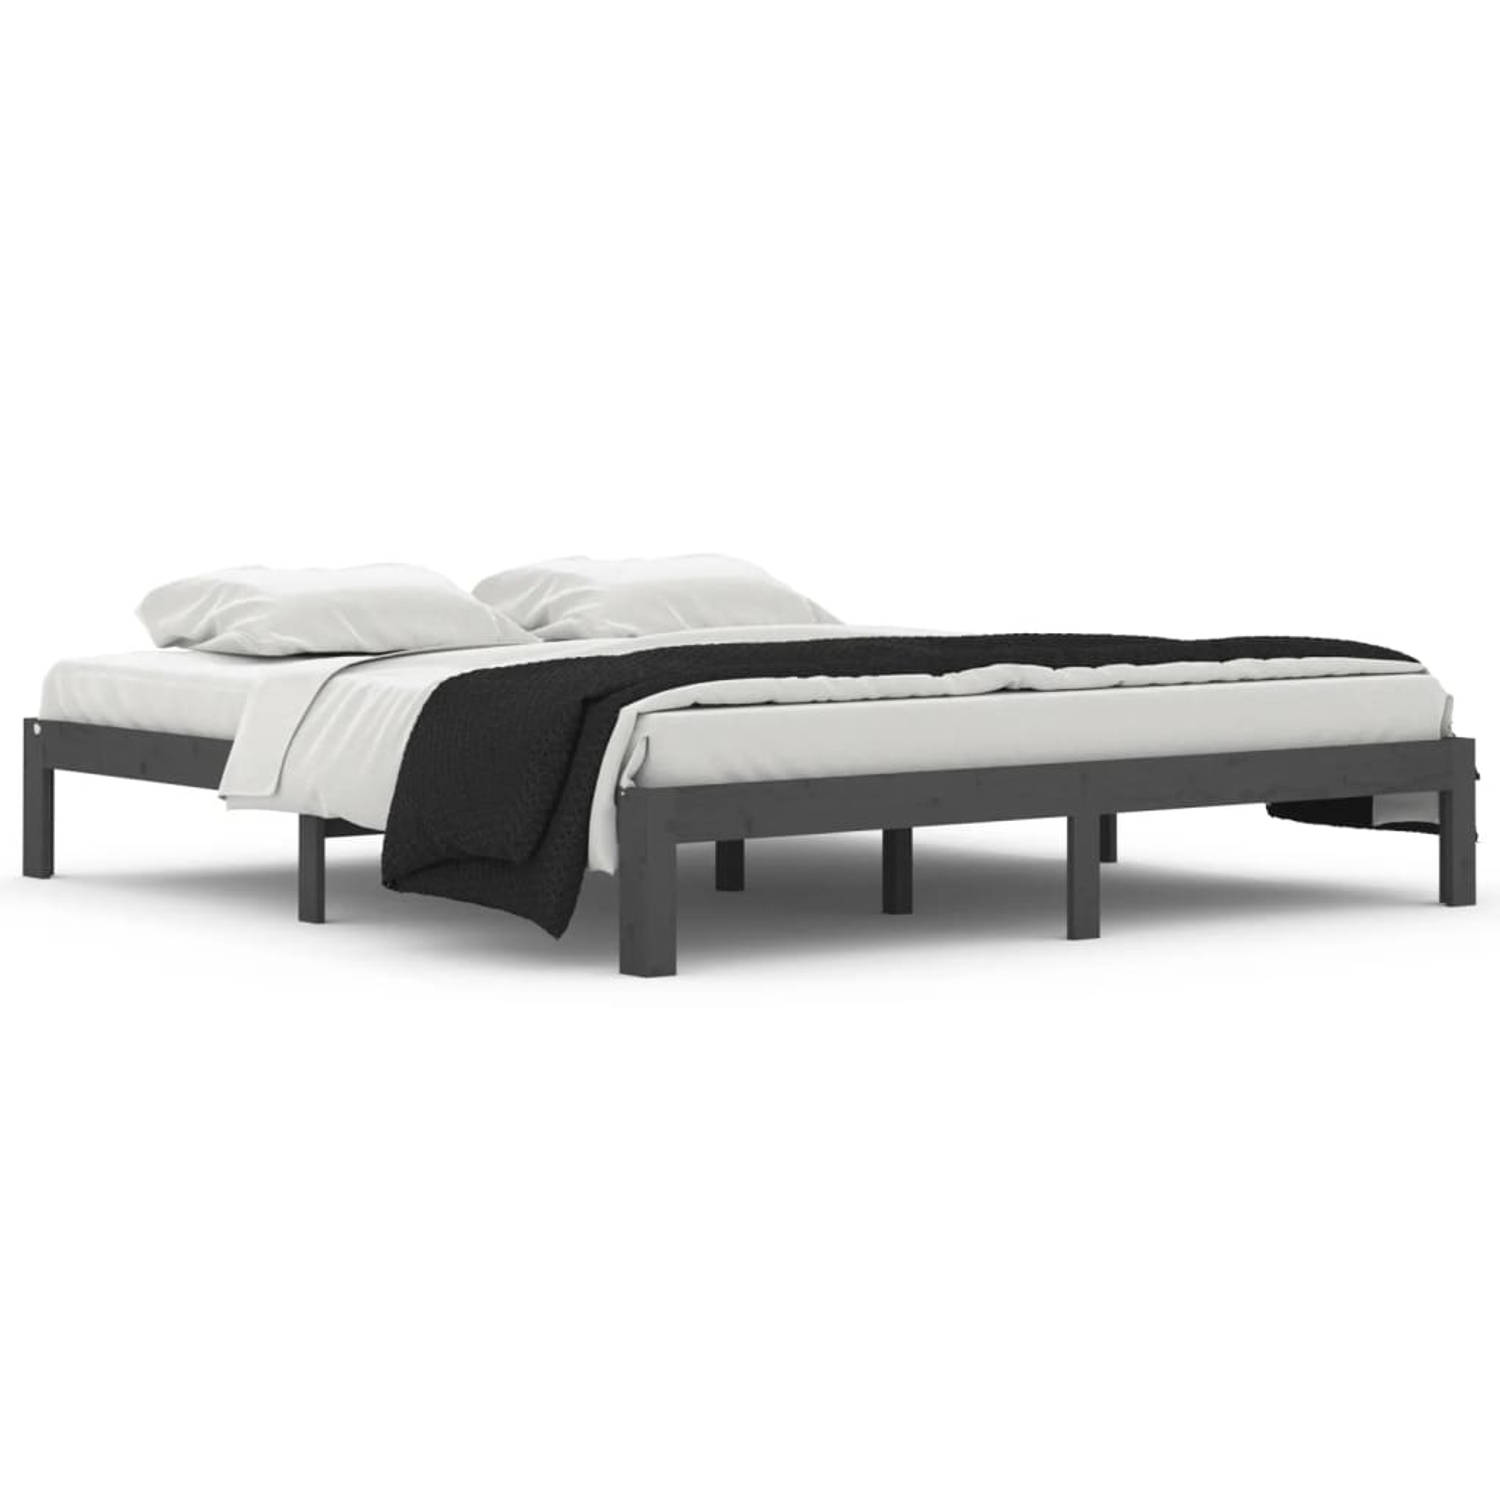 The Living Store Bedframe massief hout grijs 180x200 cm 6FT Super King - Bedframe - Bedframes - Bed - Bedbodem - Ledikant - Bed Frame - Massief Houten Bedframe - Slaapmeubel - Bedd